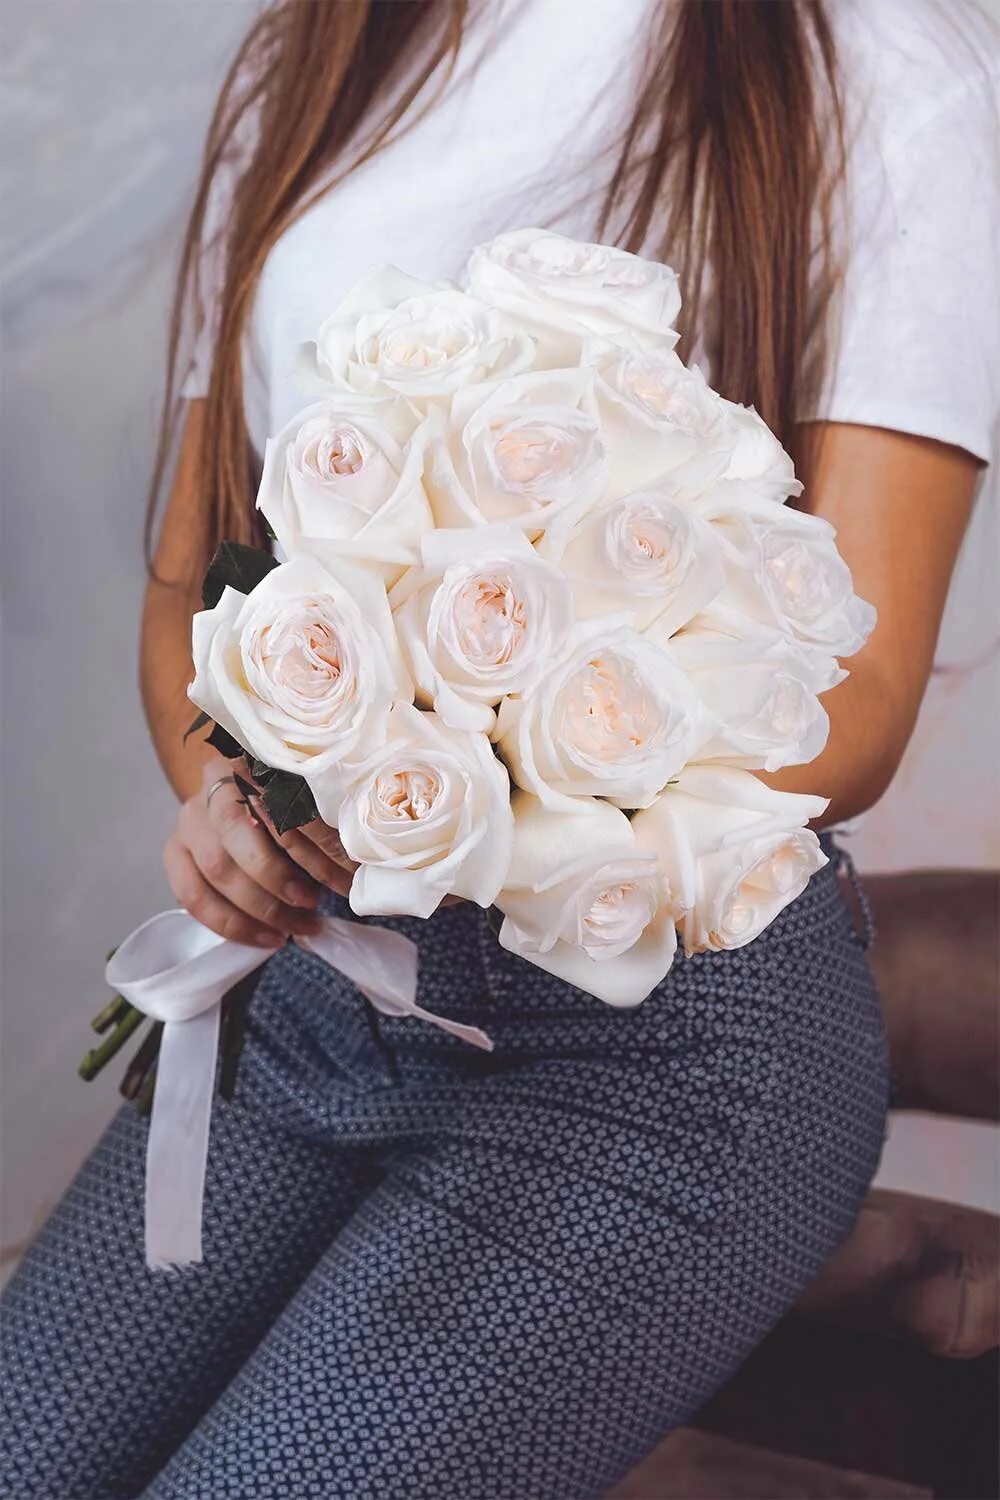 Белые розы в руках. Девушка с белыми розами. Девушка с букетом роз. Букет "девушке". Девушка с букетом белых роз.